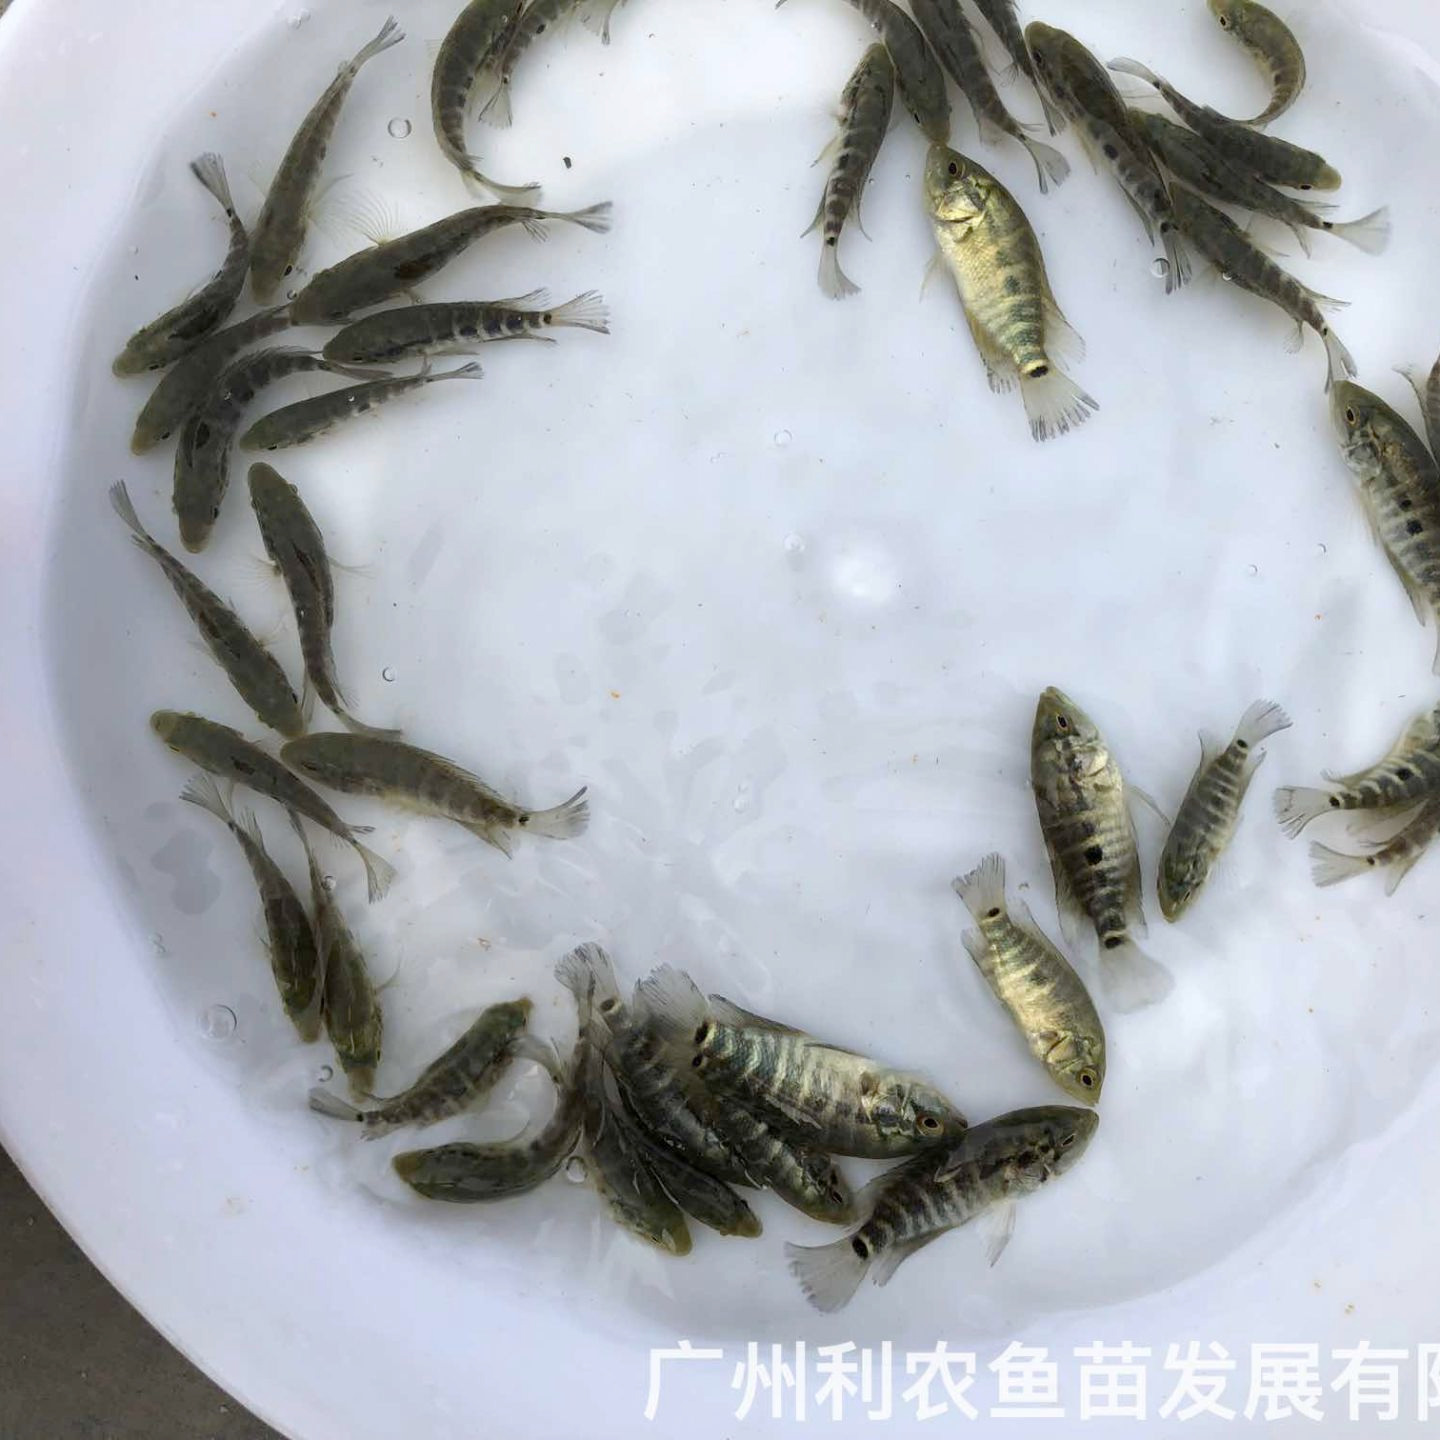 广东怀集淡水花斑鱼苗出售广东惠州石斑鱼苗批发价格